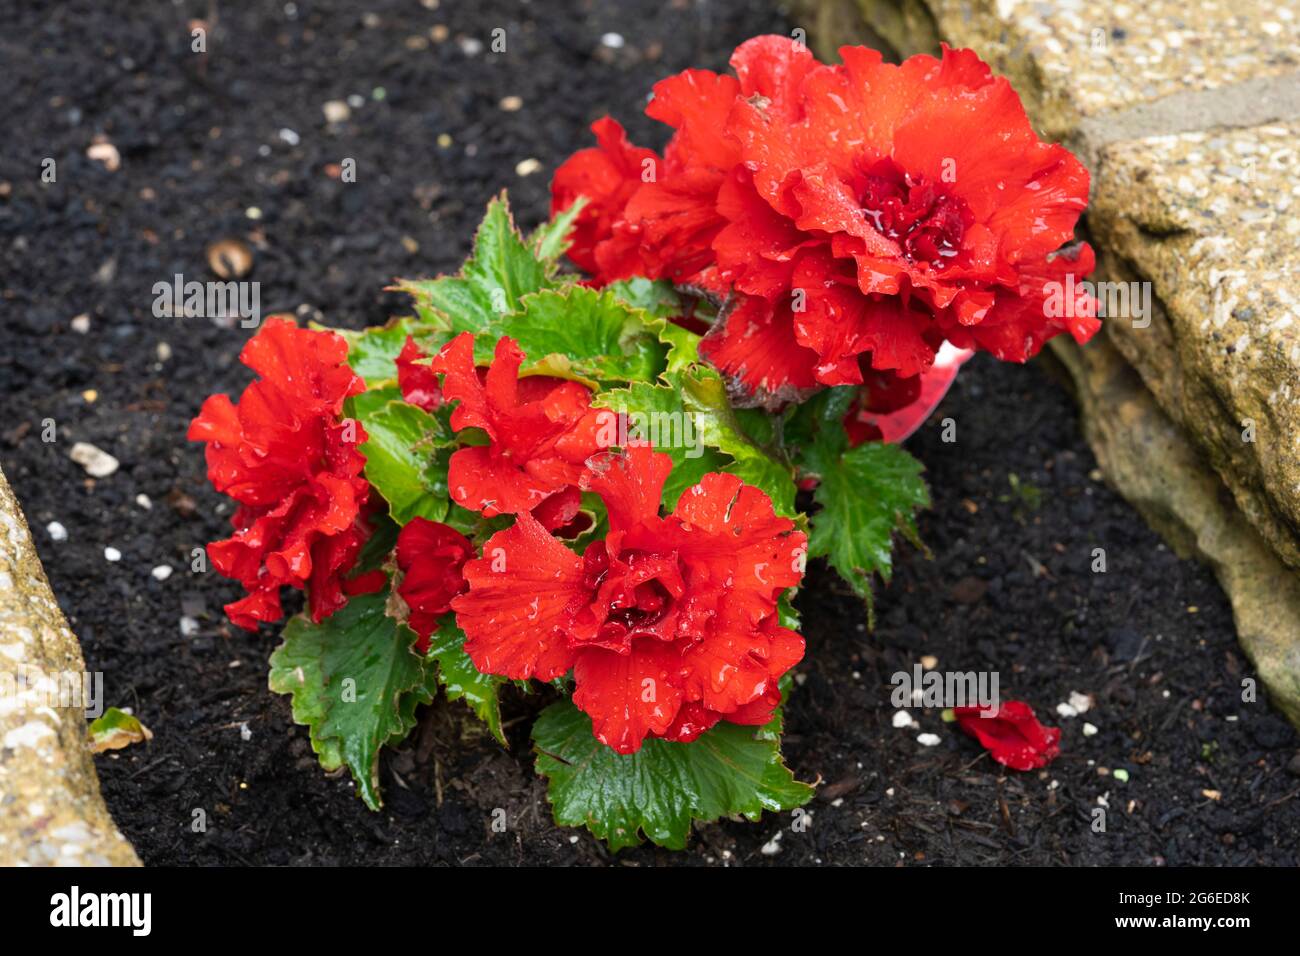 Begonia Nonstop F1 rouge (Tuberhybrida Begonia, Begonia Tuberhybrida) fleurit en juillet dans un jardin avec des fleurs doubles rouge écarlate et des gouttes de pluie. ROYAUME-UNI Banque D'Images